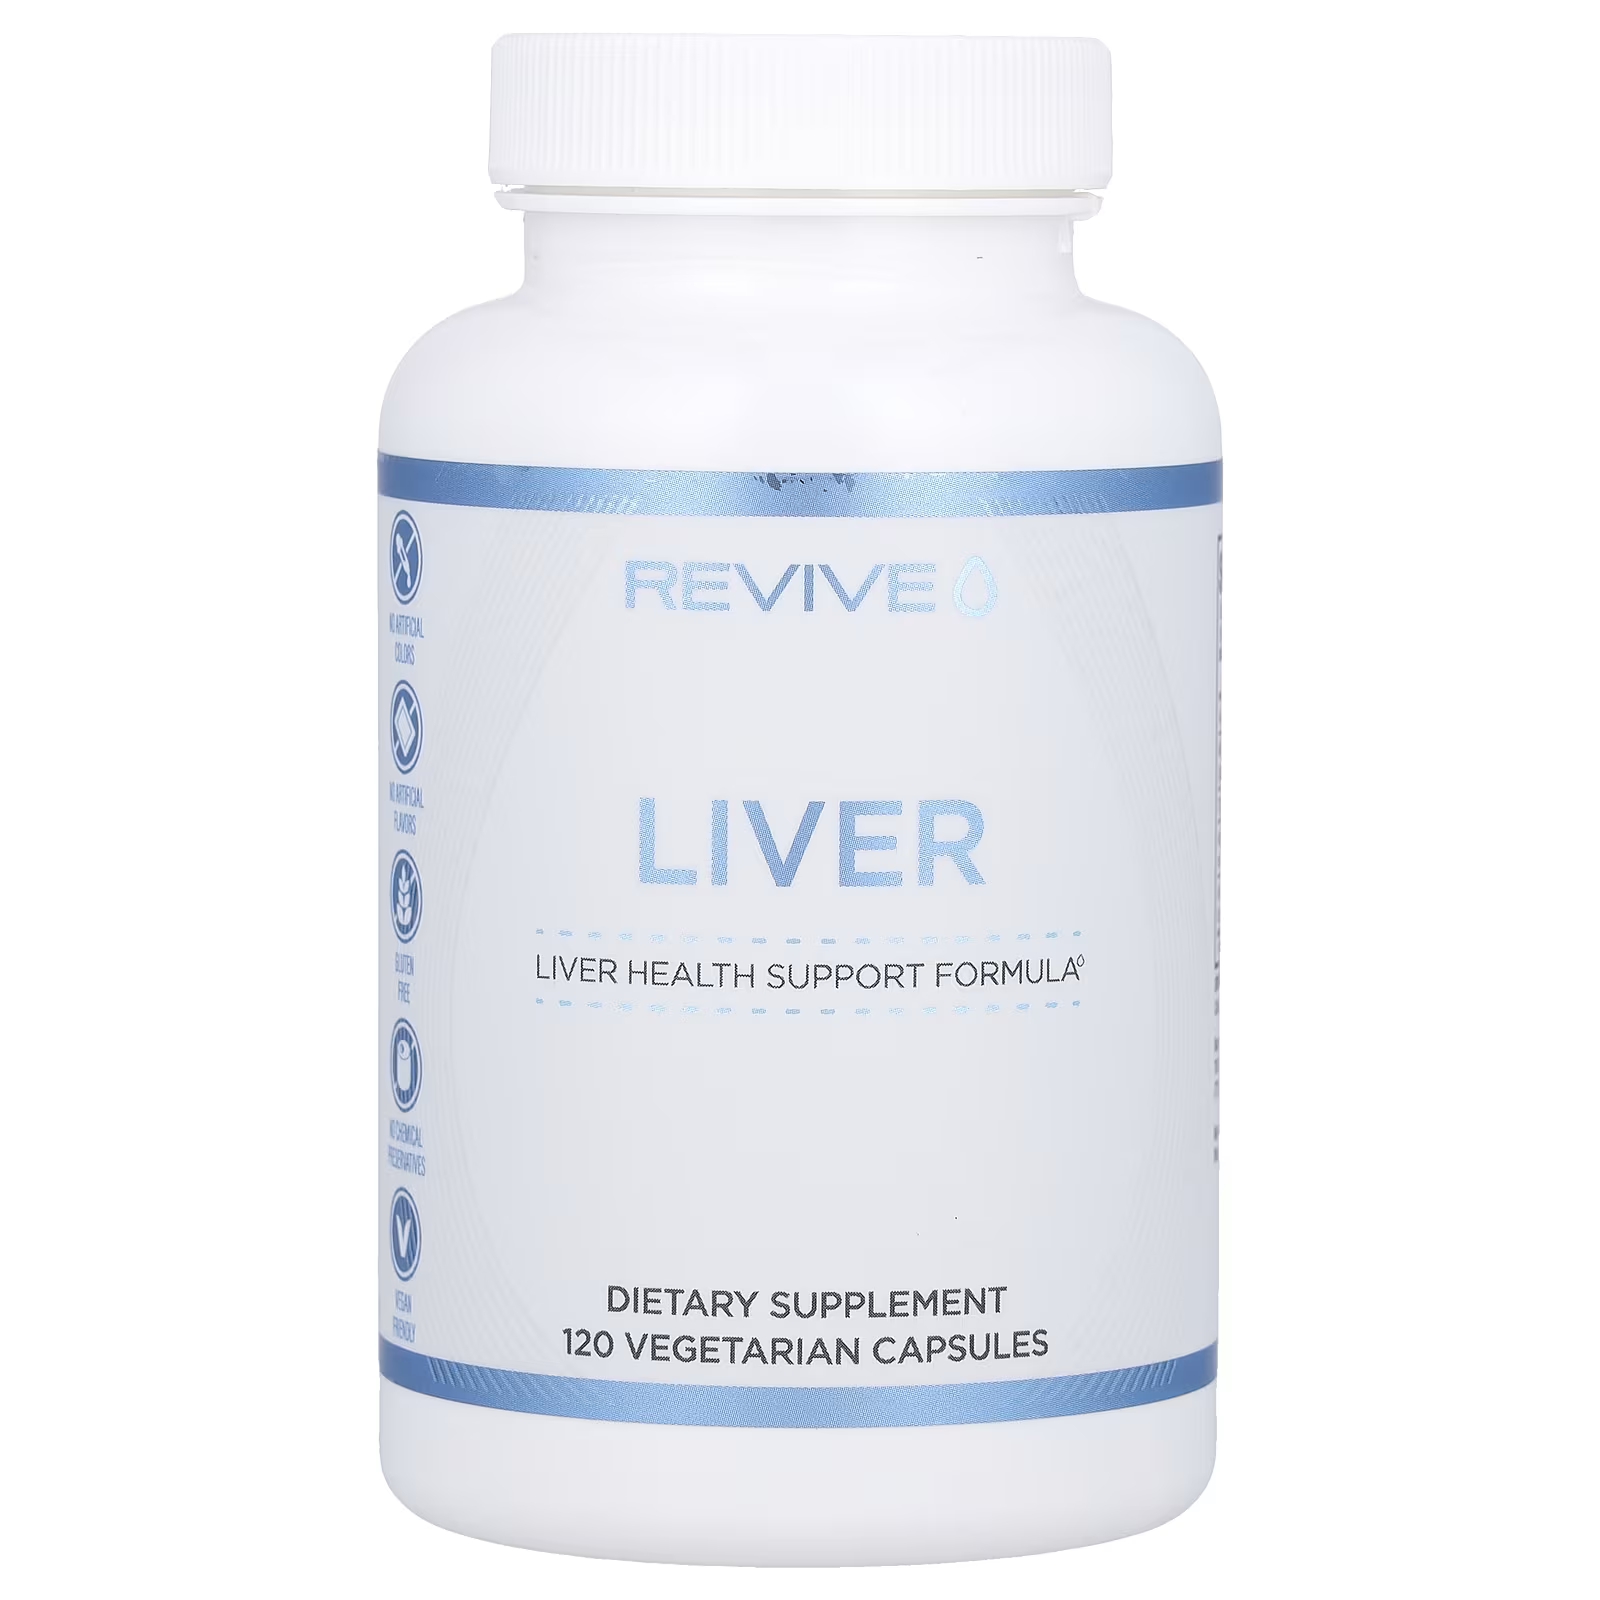 Пищевая добавка Revive Liver для печени, 120 вегетарианских капсул adrenalcore 60 вегетарианских капсул revive